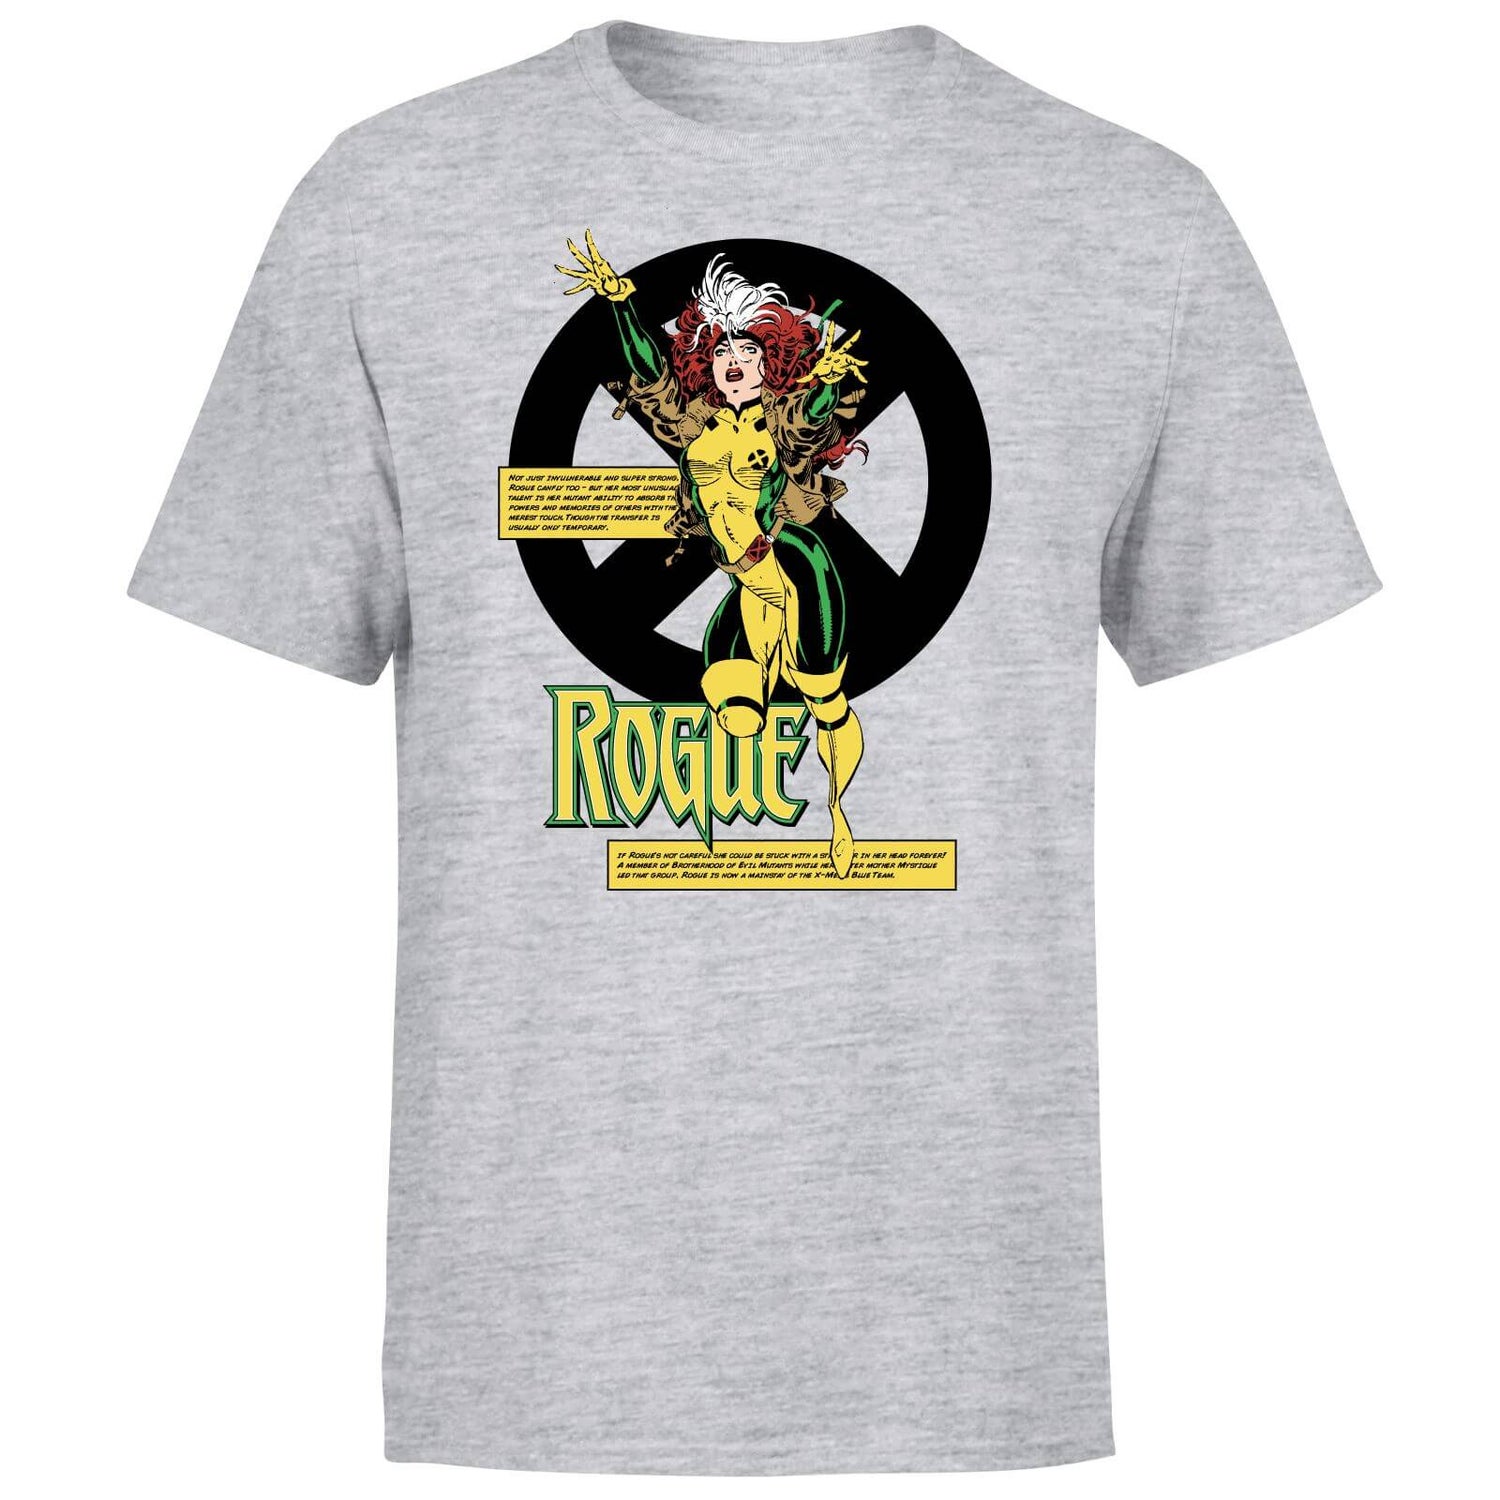 X-Men Rogue Bio T-Shirt - Grey